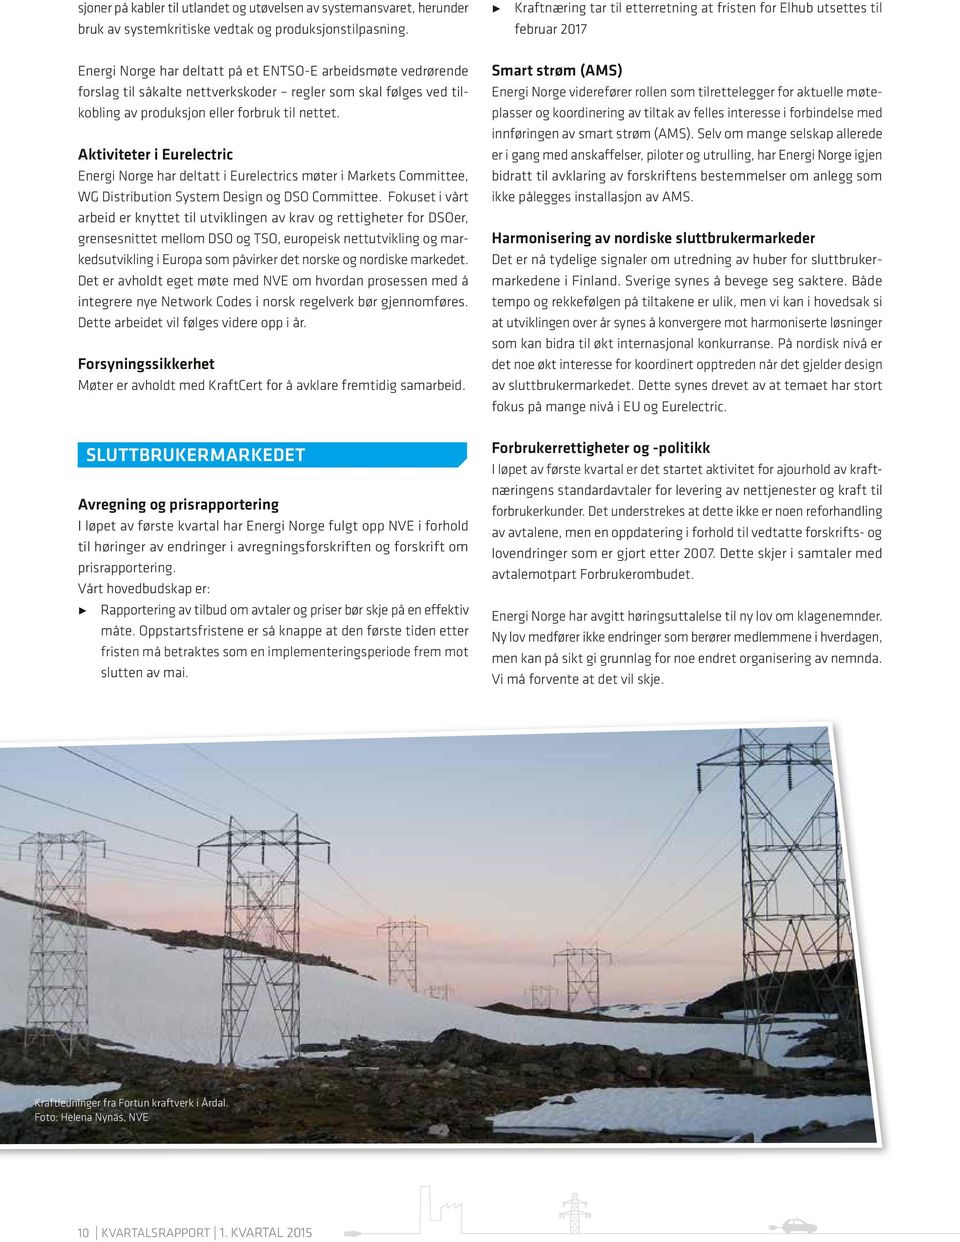 ved tilkobling av produksjon eller forbruk til nettet. Aktiviteter i Eurelectric Energi Norge har deltatt i Eurelectrics møter i Markets Committee, WG Distribution System Design og DSO Committee.